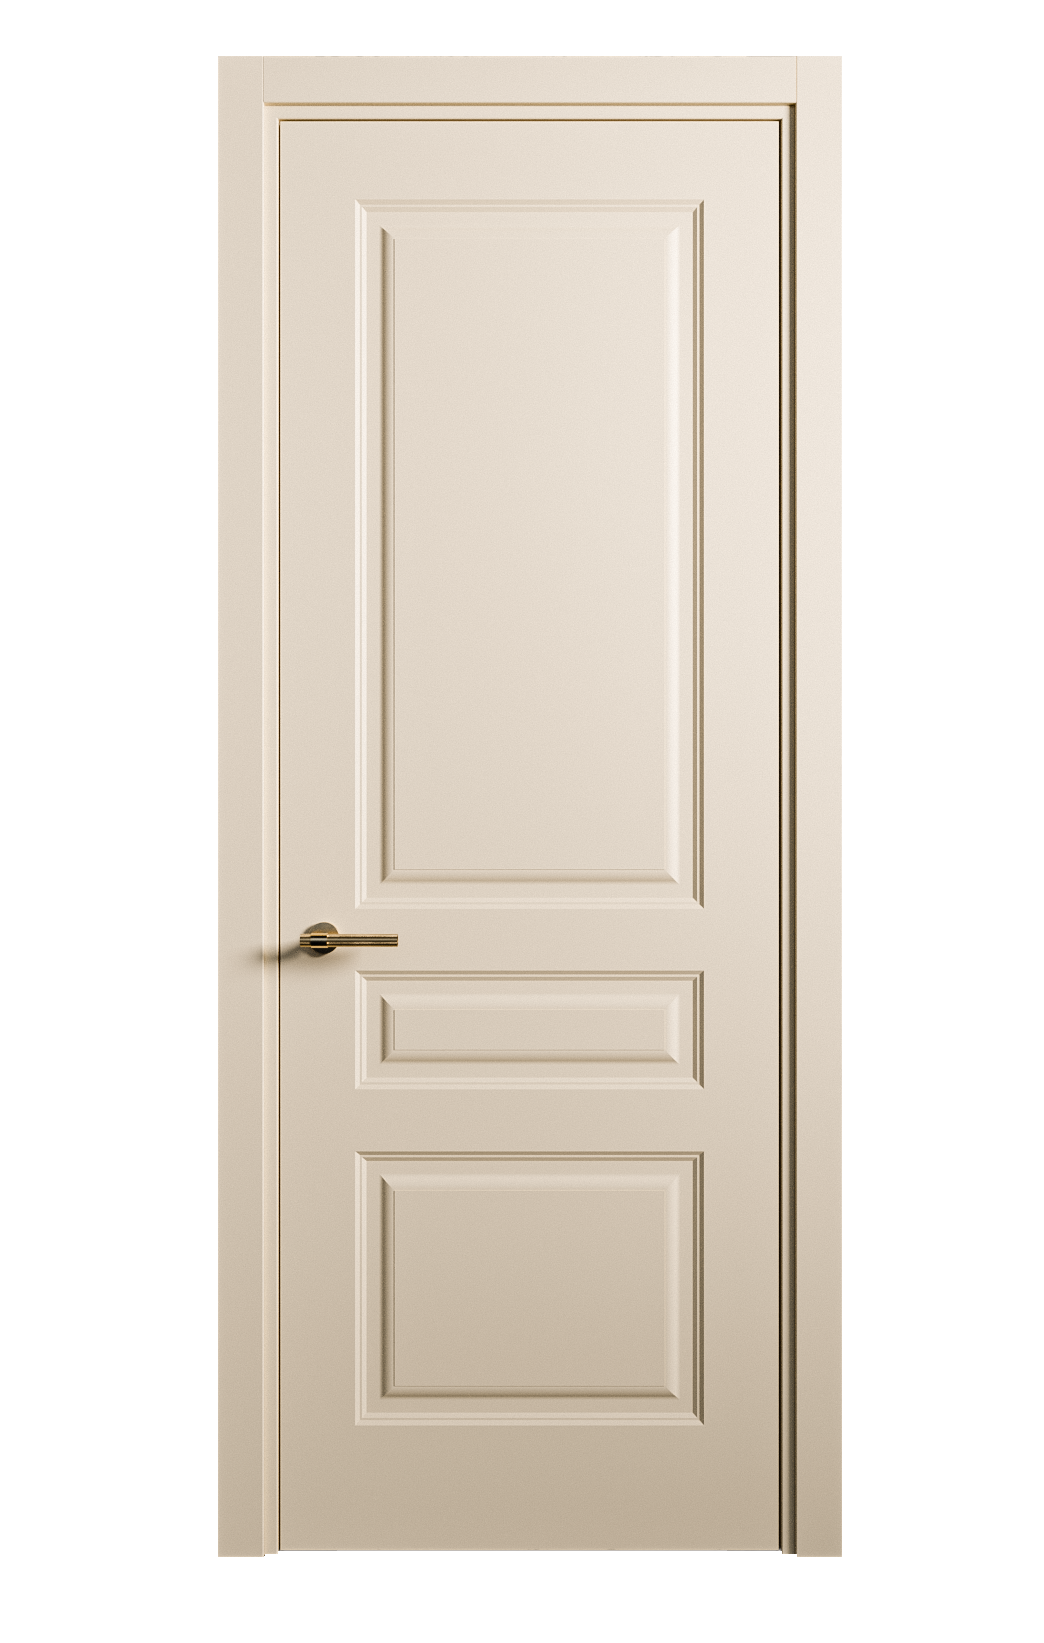 Межкомнатная дверь Вита-2 глухая эмаль ral 1015 26386